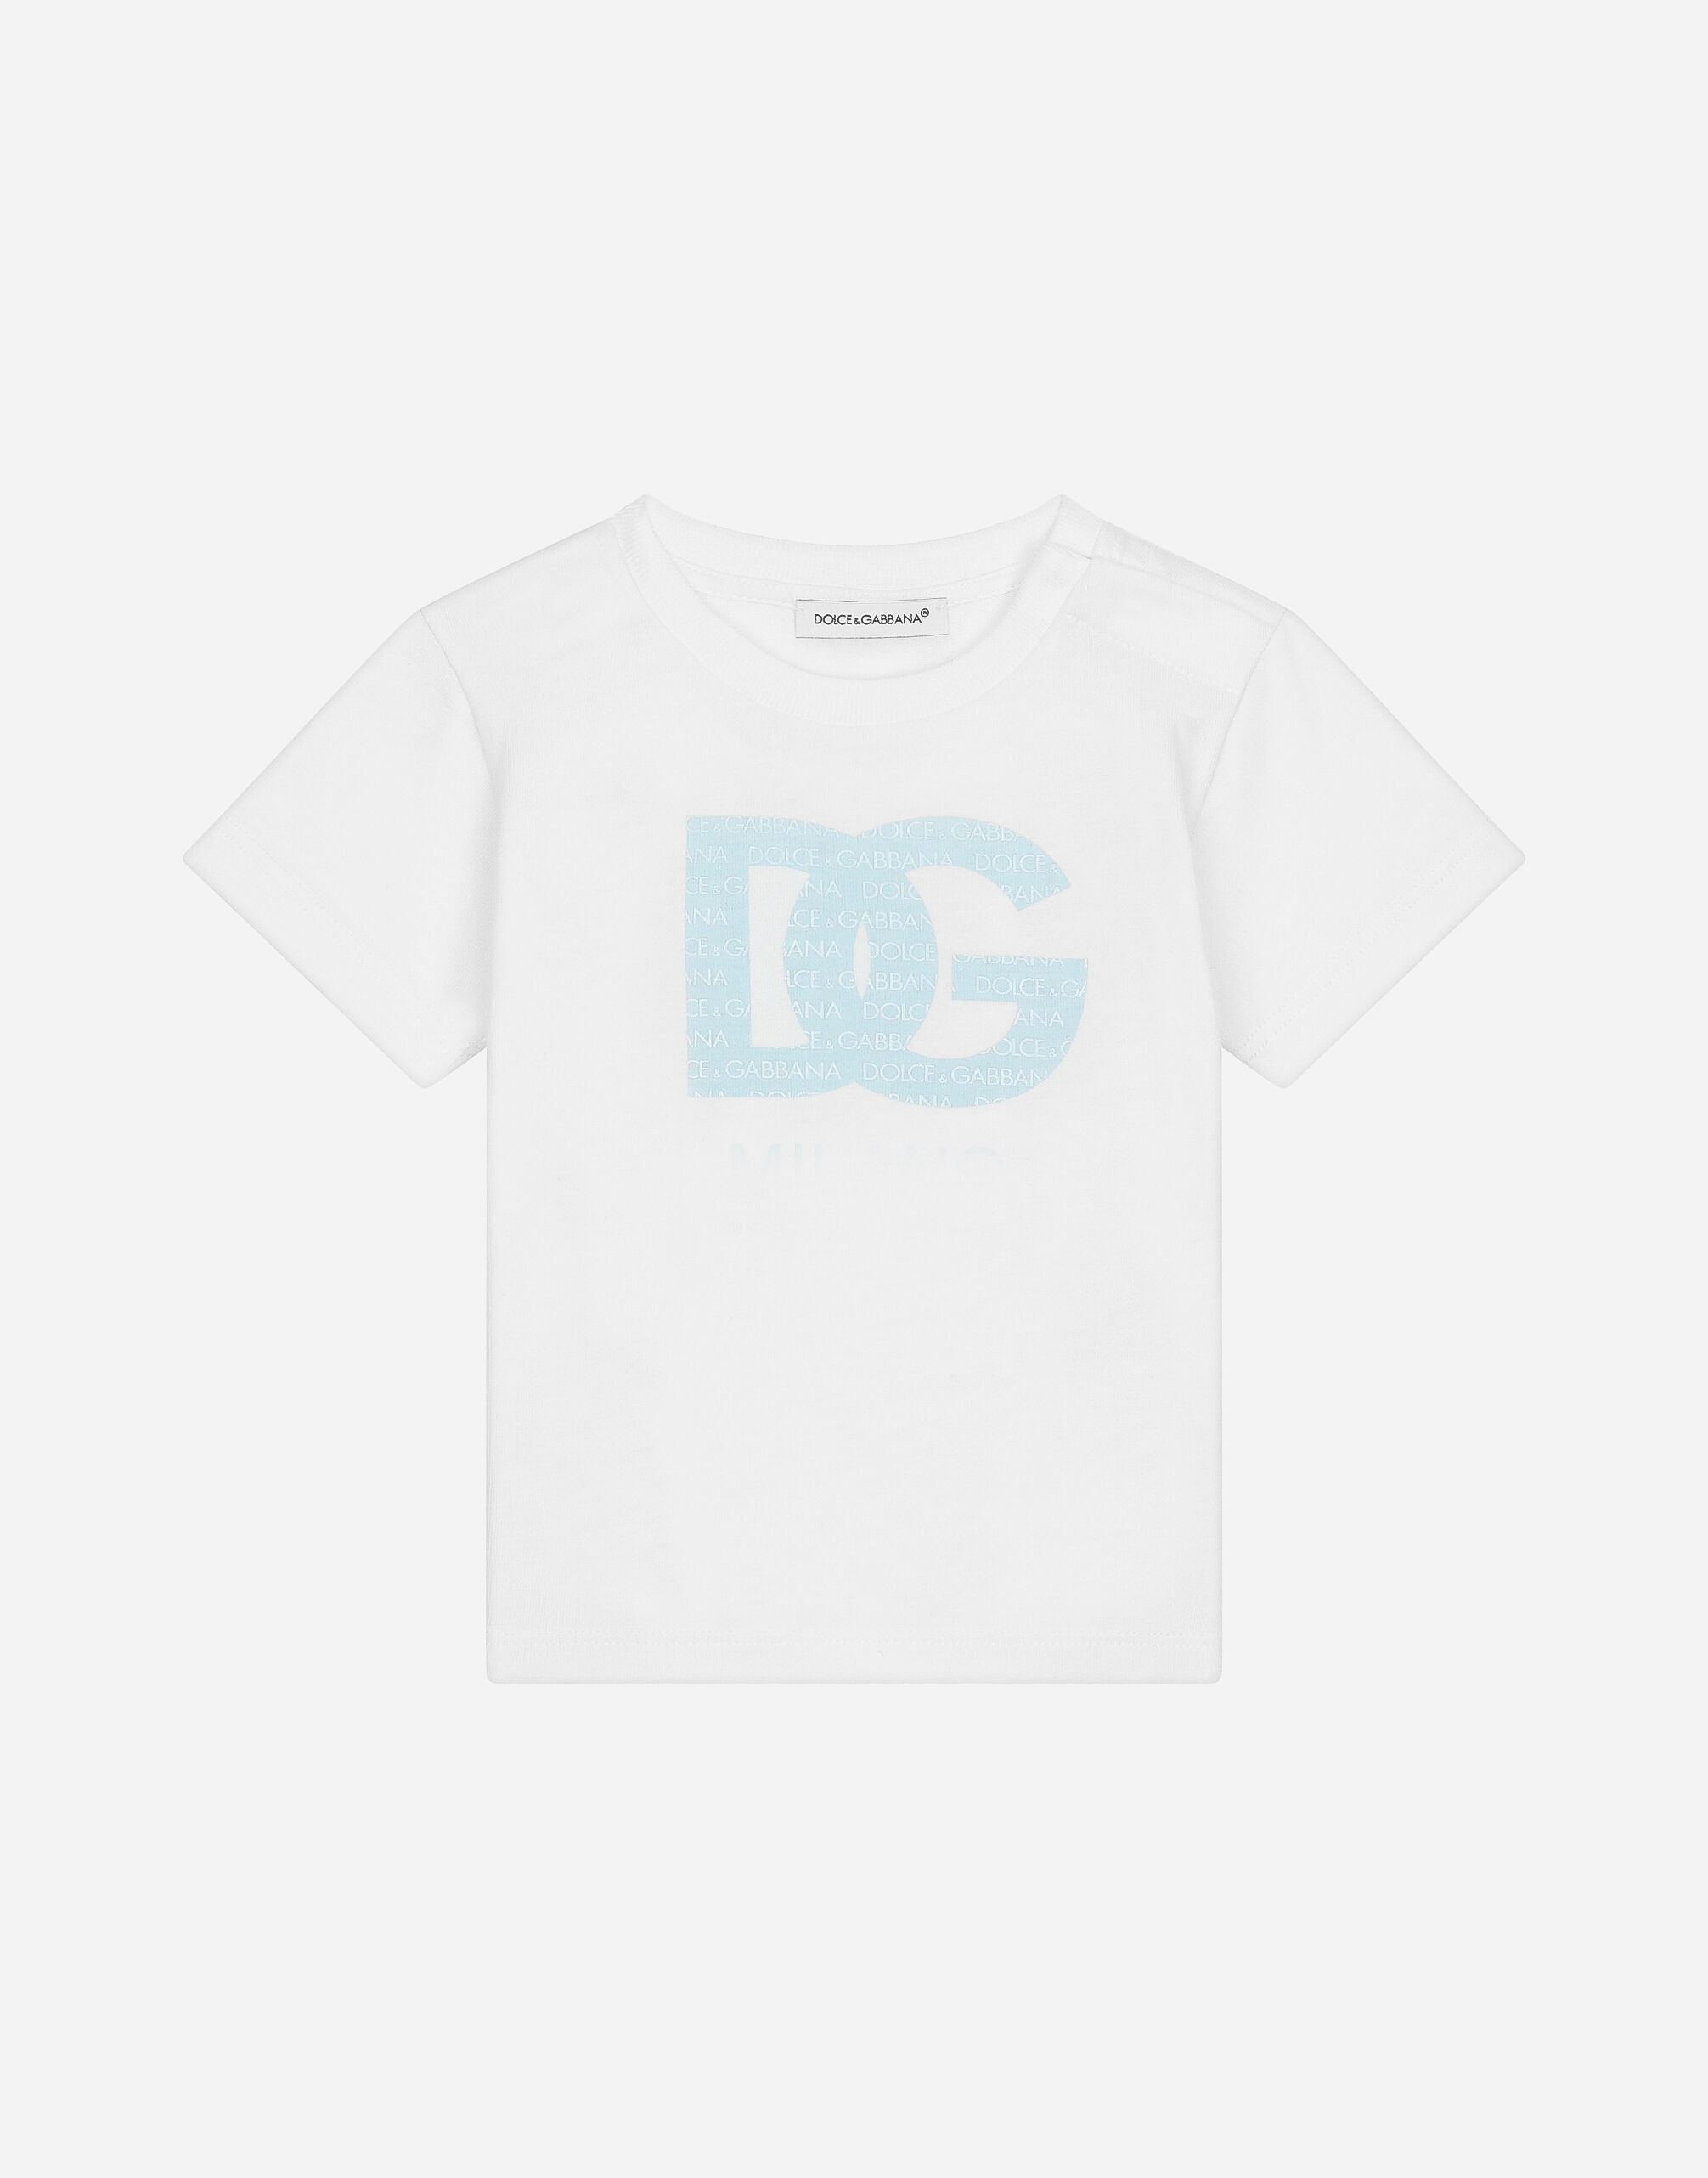 Dolce & Gabbana T-shirt in jersey logo DG Bianco L1JTEYG7K7R